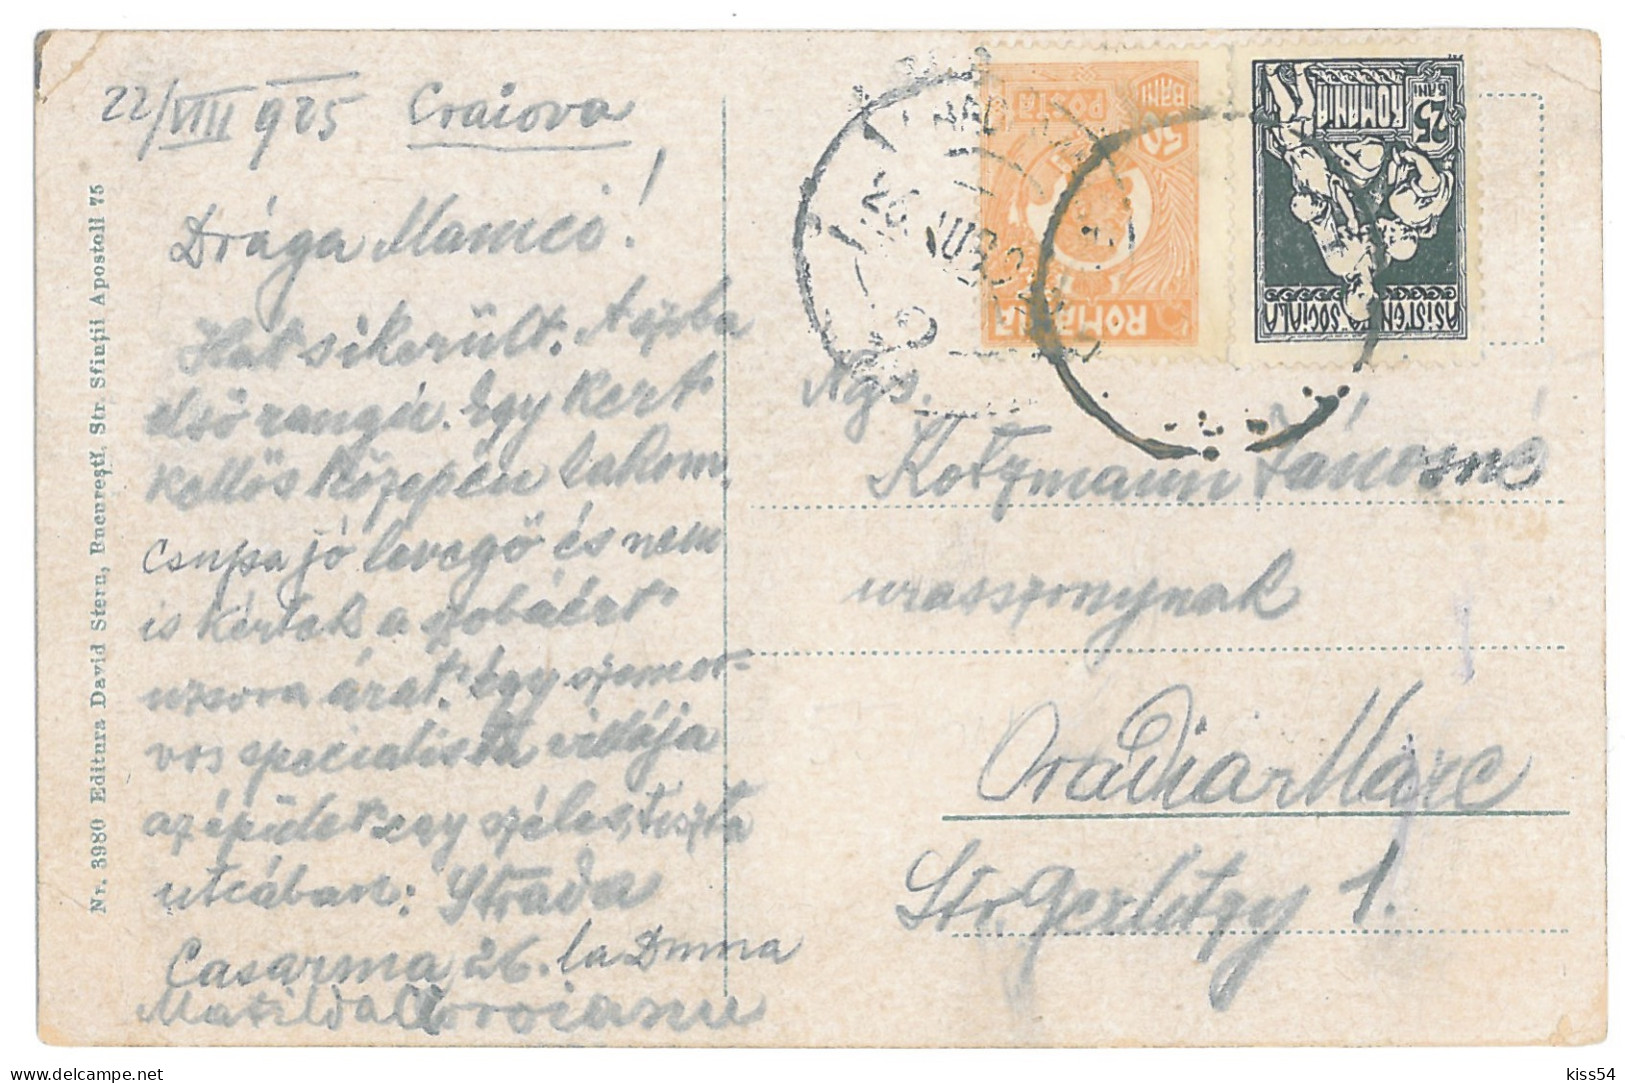 RO 45 - 14733 CRAIOVA, Market, Romania - Old Postcard - Used - 1925 - Rumänien